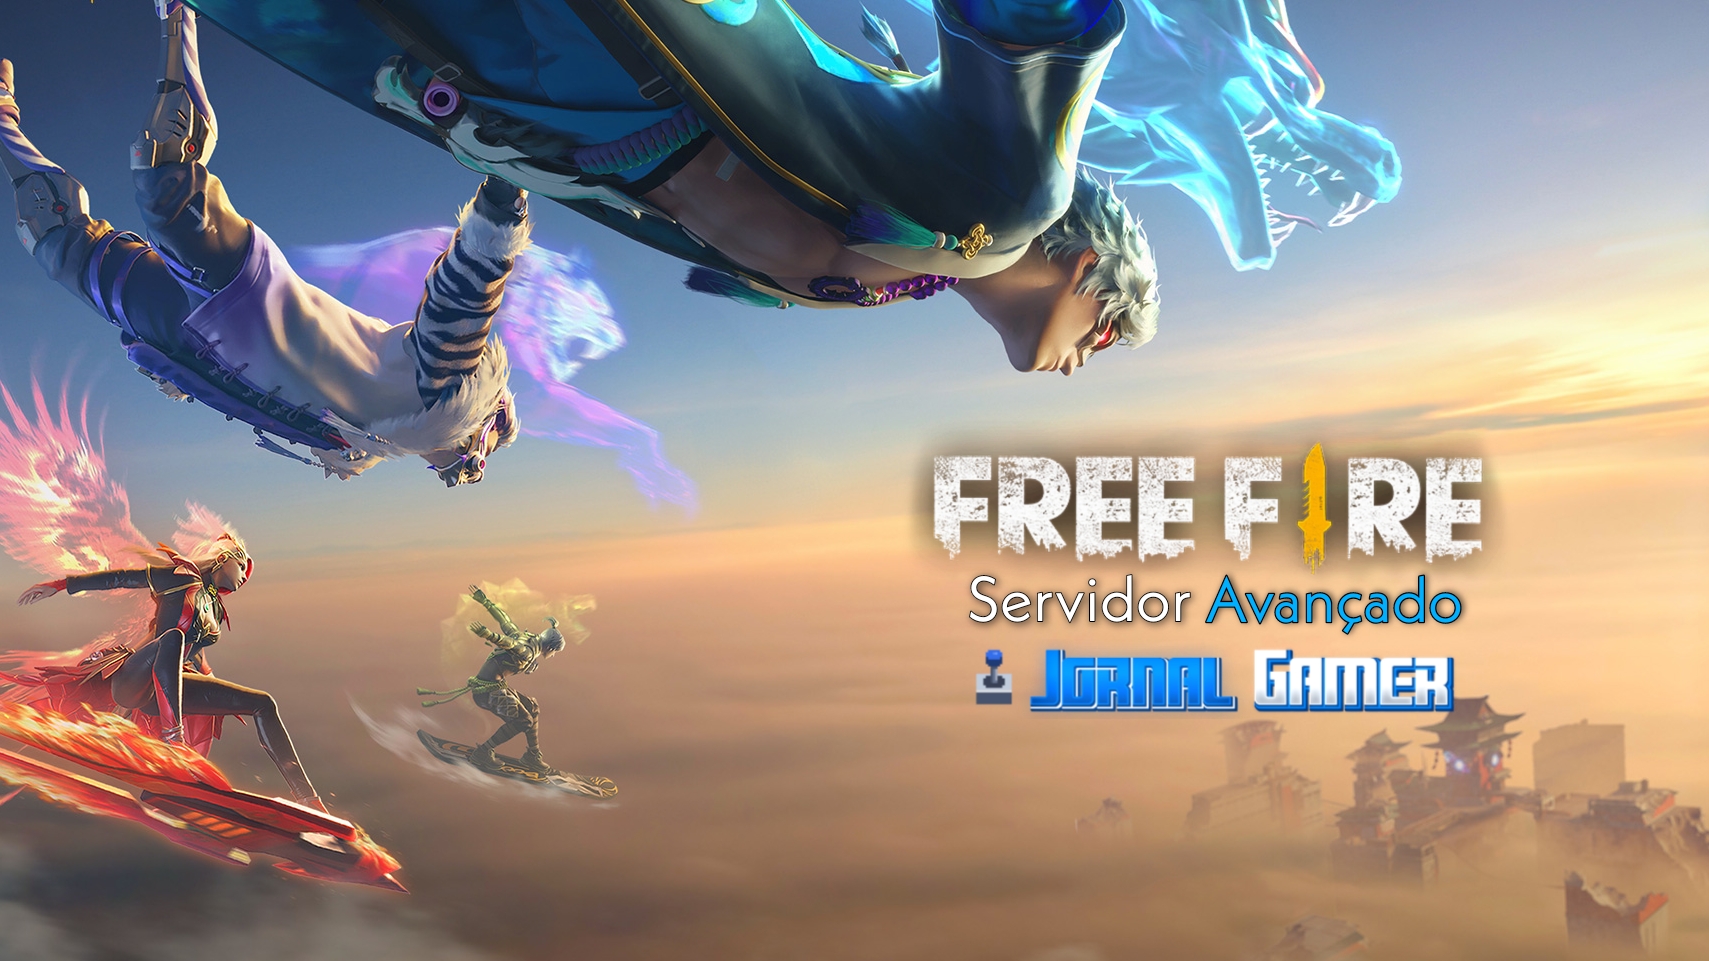 Novidades do servidor avançado Free Fire! #apolodavi #freefire